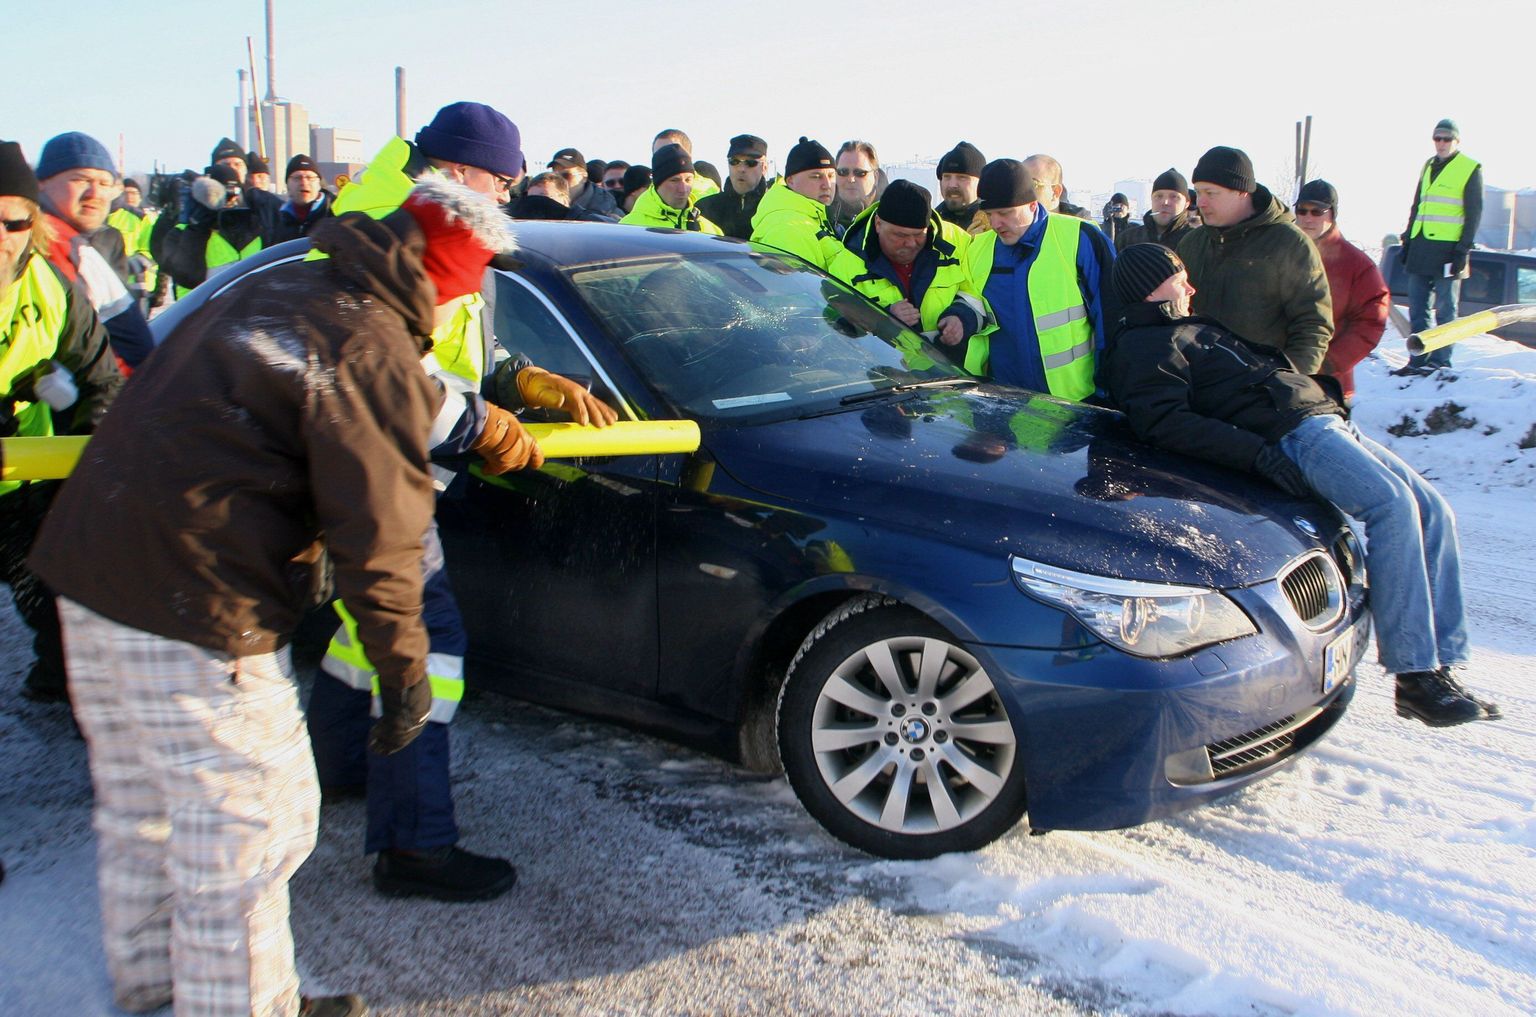 Soome dokitööliste streik 2010. aastal: streikijad ei lase firmajuhi autot Kotka sadamasse.